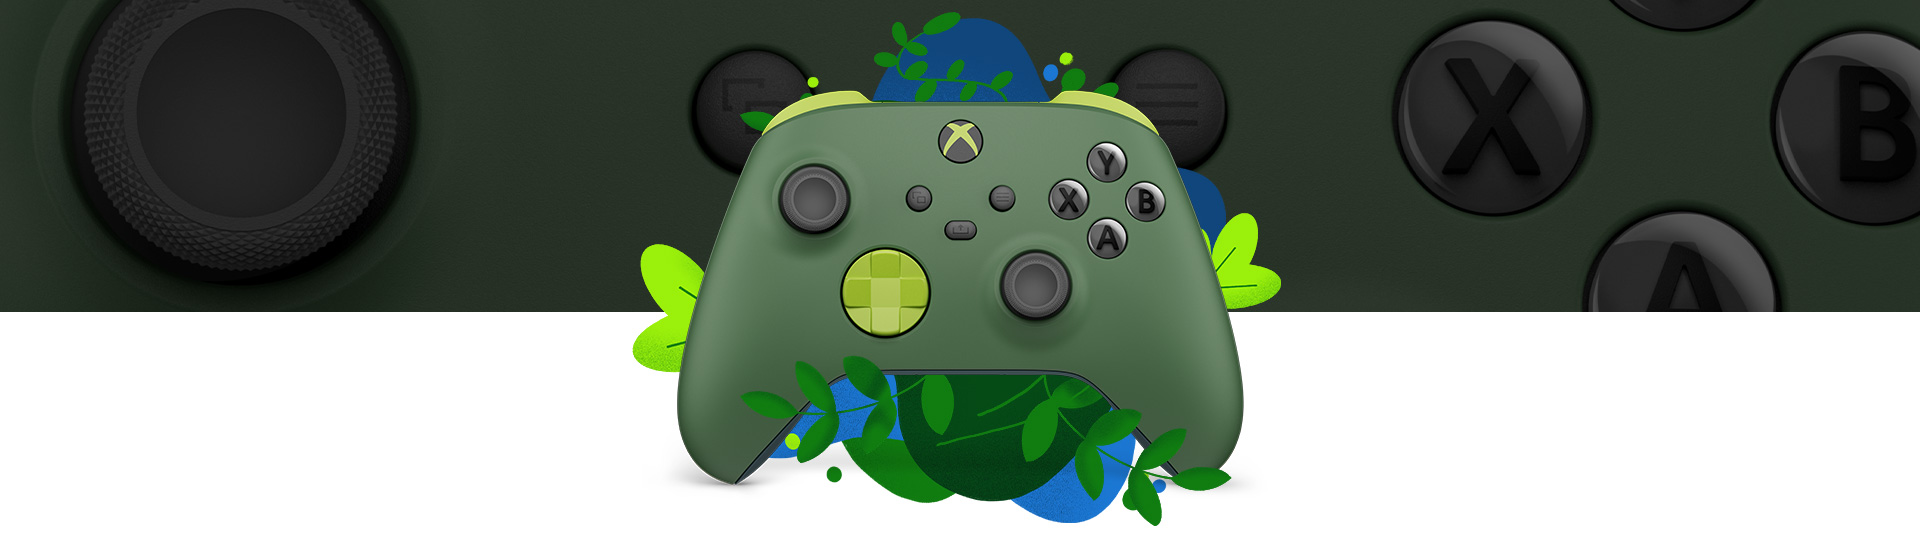 Vista frontal del Mando inalámbrico Xbox: Remix Special Edition rodeado de vegetación y salpicaduras de agua azul, con una vista de primer plano en el fondo.